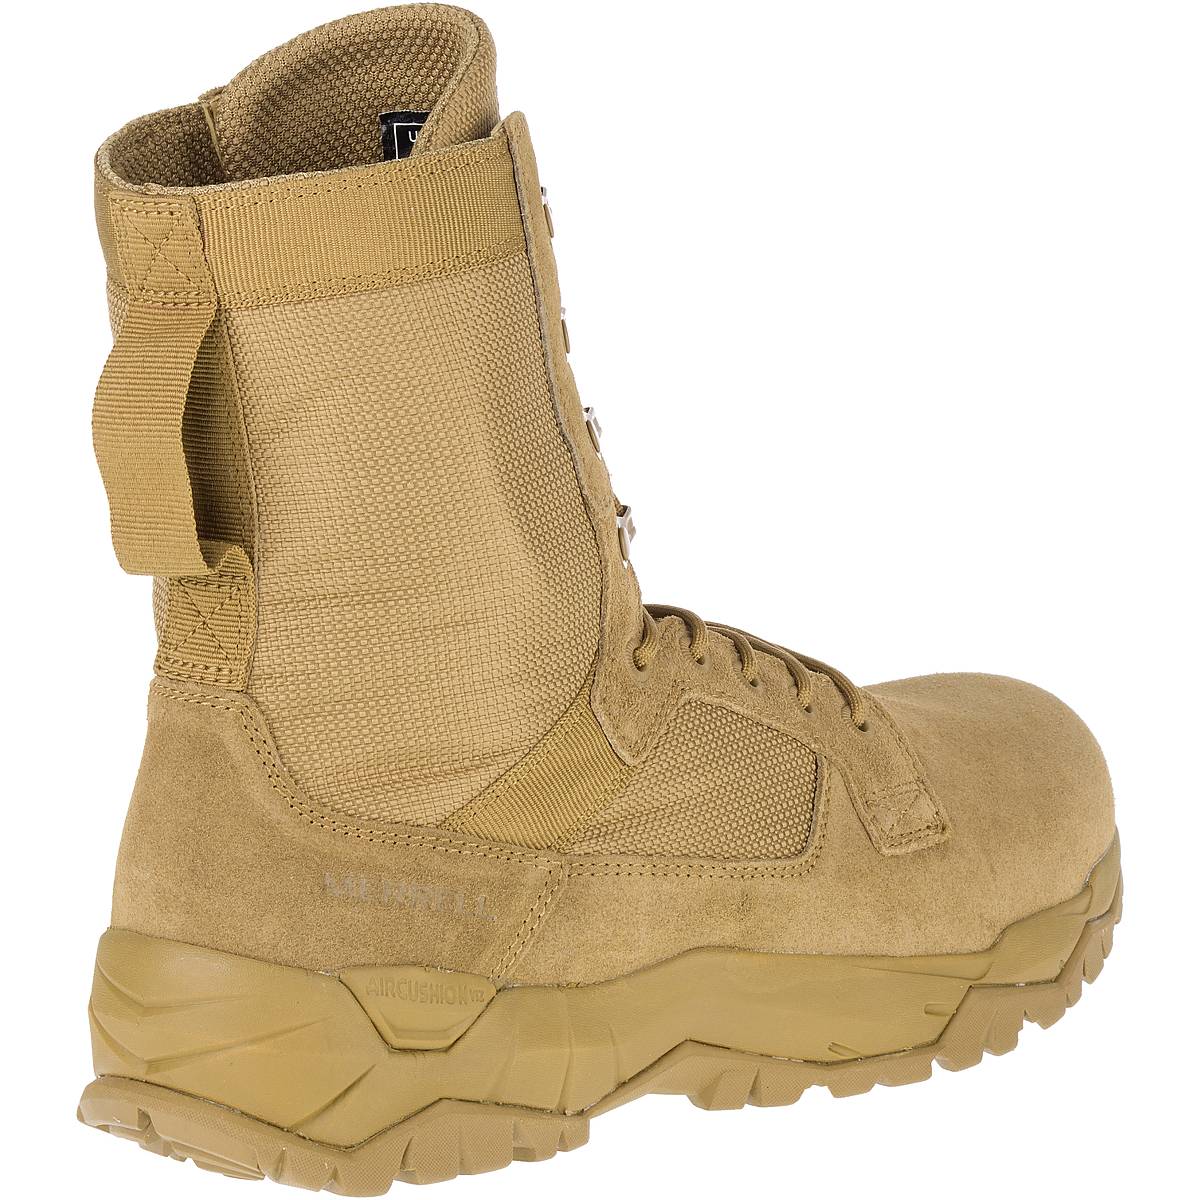 merrell mqc tactical boots